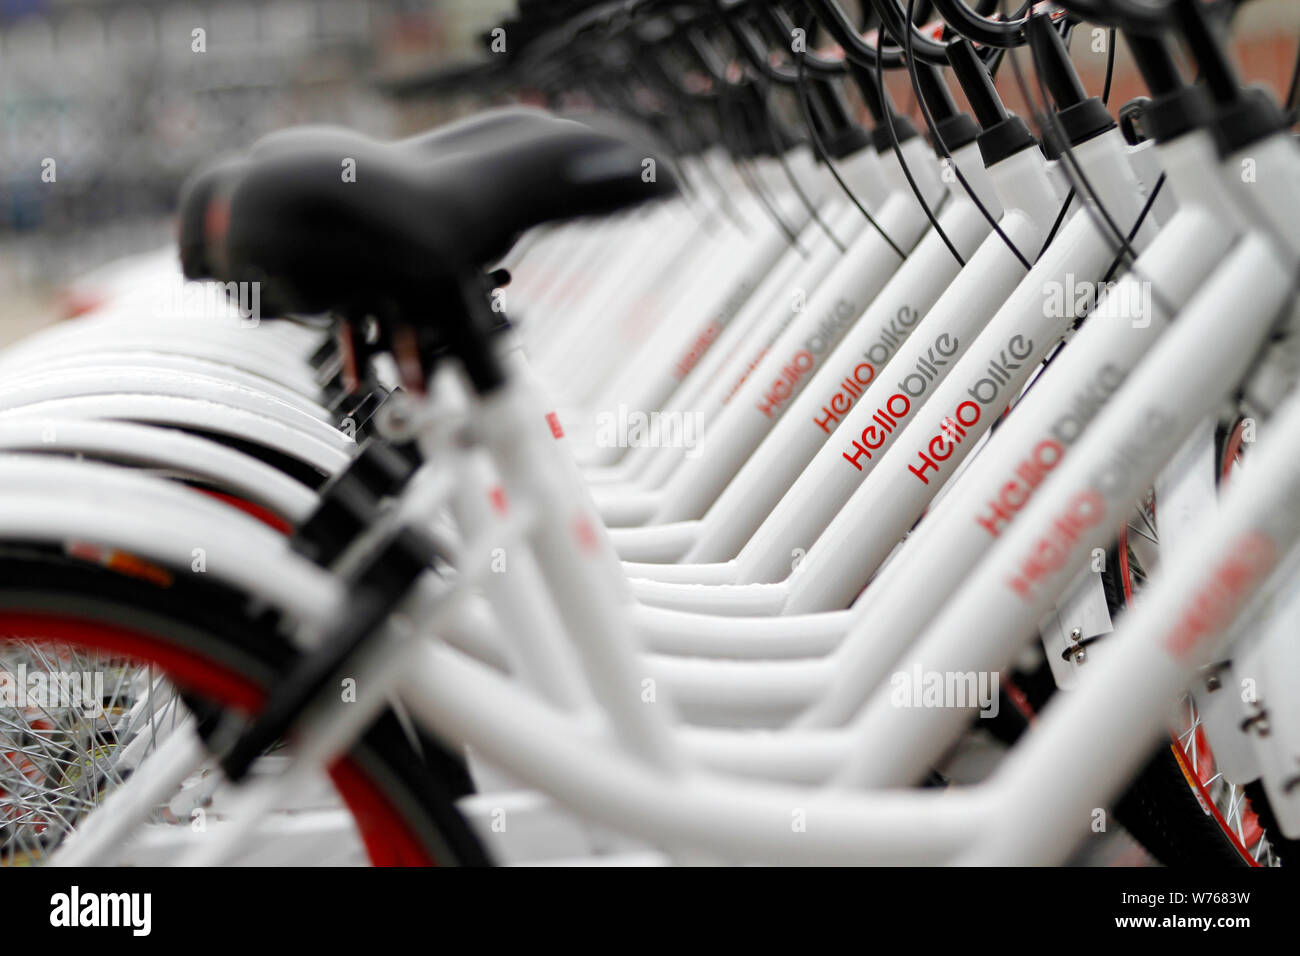 --Archivo-bicicletas de servicios de intercambio de bicicletas chinas Hellobike están alineadas en una calle en la ciudad de Nanjing, provincia de Jiangsu de China oriental, el 11 de abril de 2017. Foto de stock